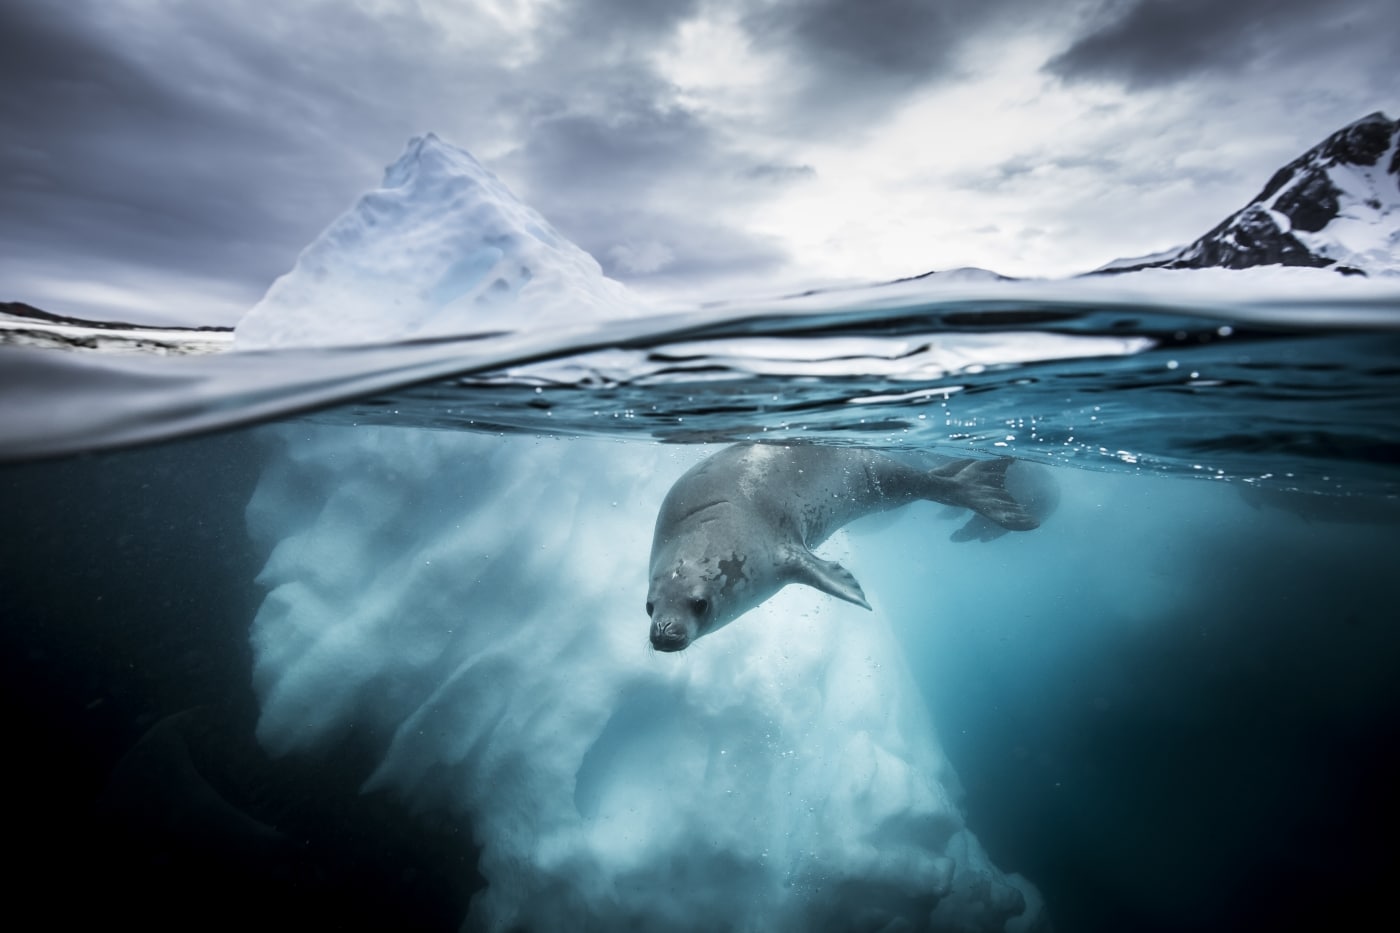 Concurso de fotografía subacuática